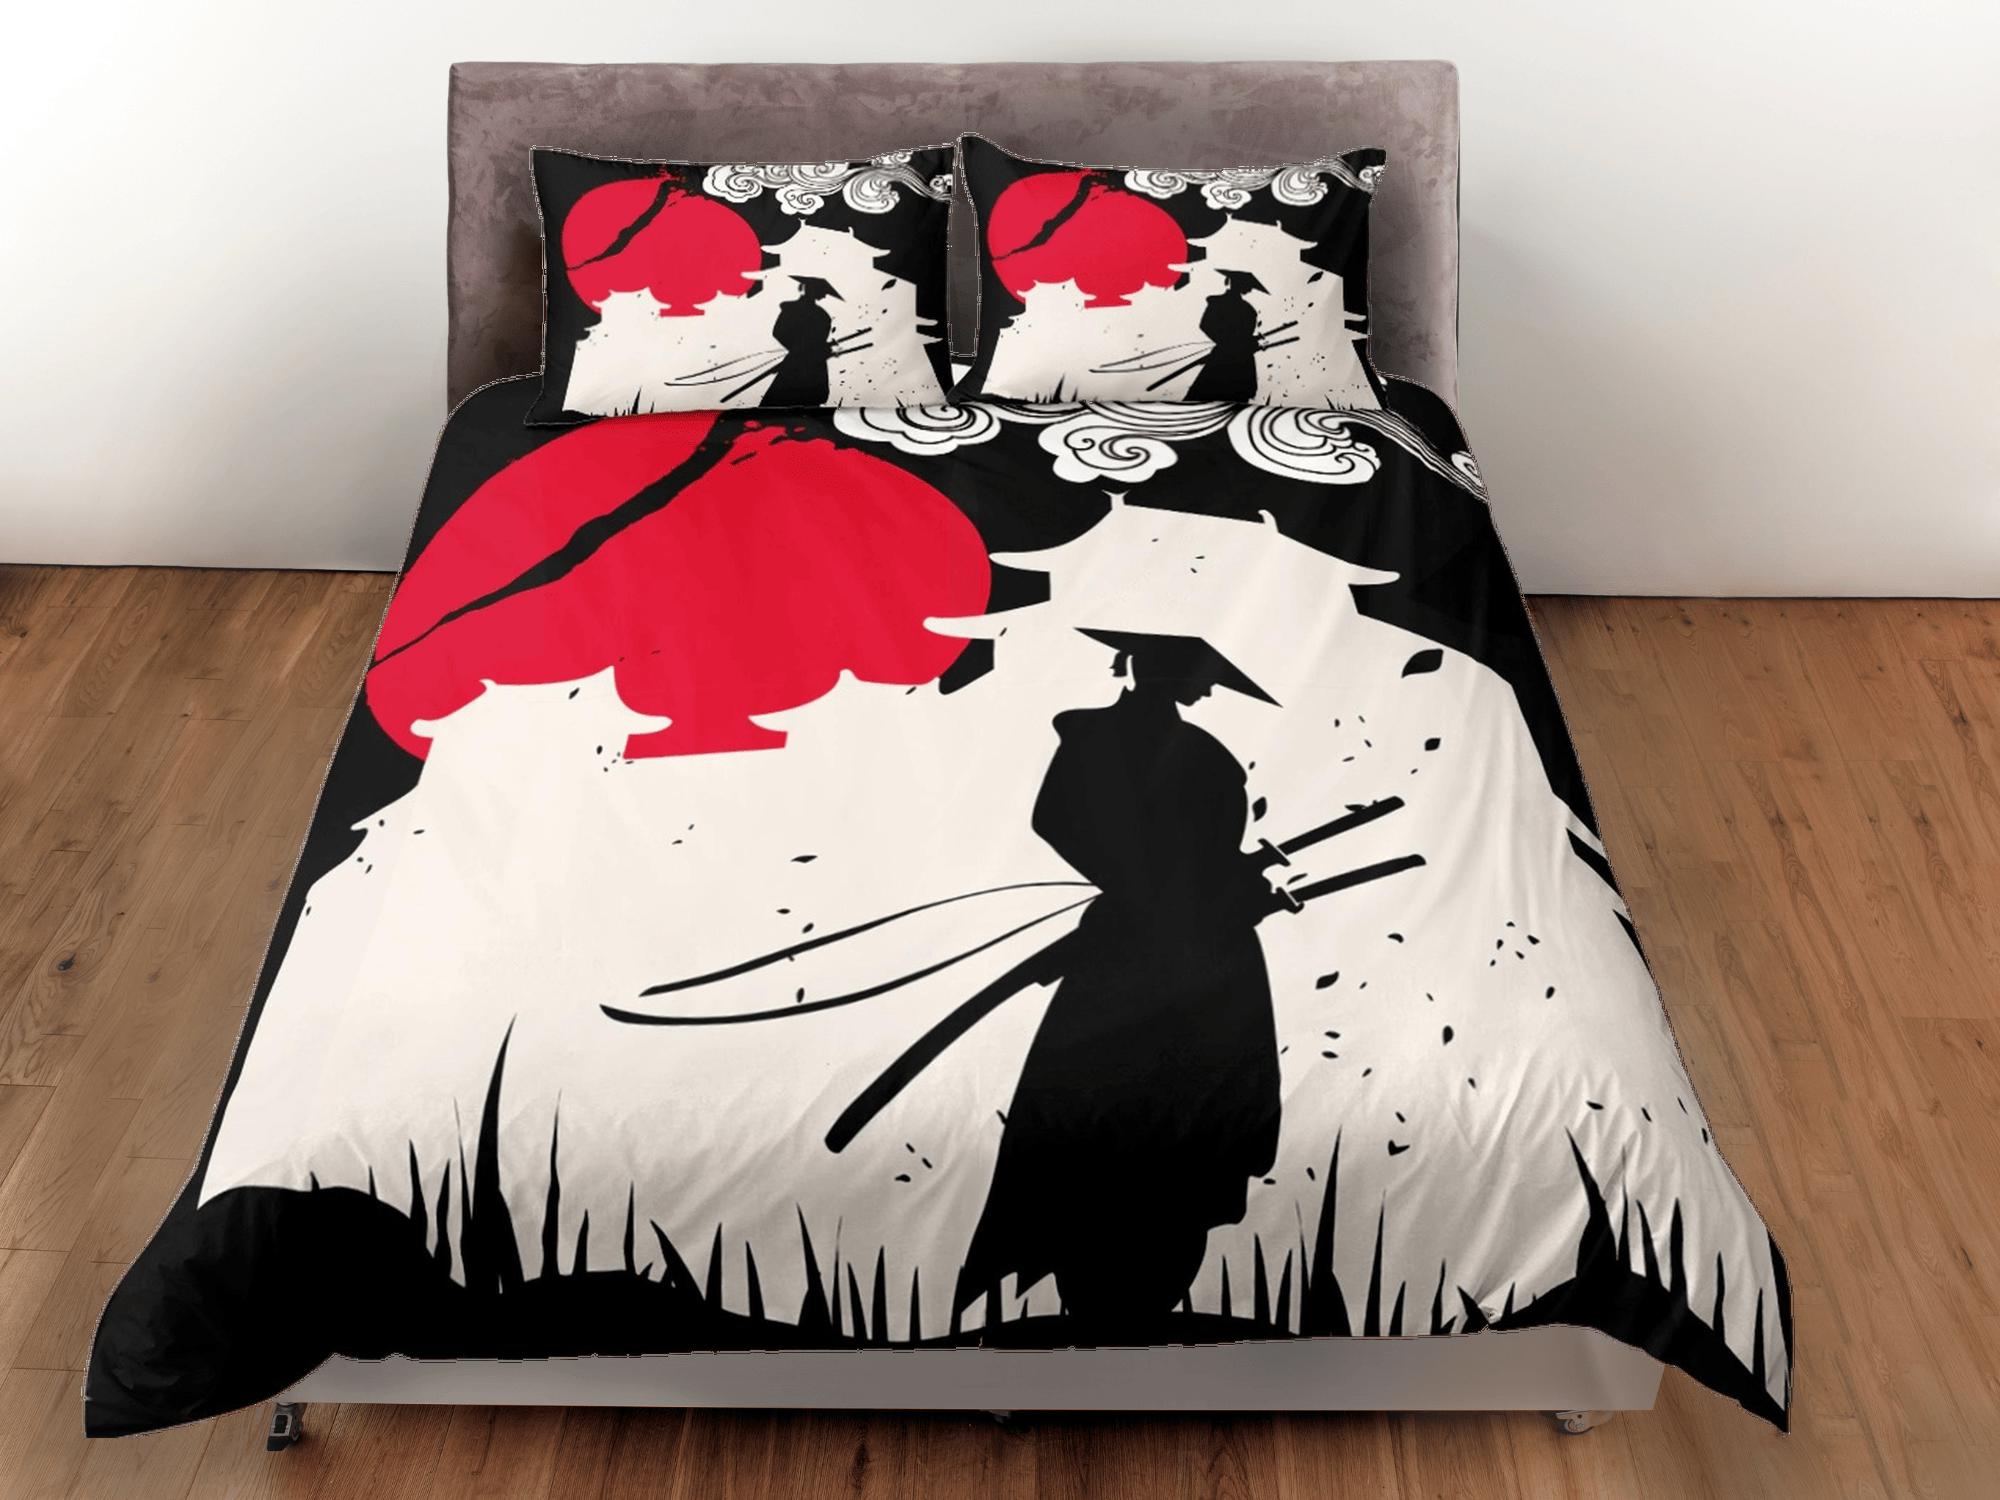 daintyduvet Samurai bedding, japanese duvet cover set for king, queen, full, twin, single, bed, bedding for boys, anime lover gift, japan culture